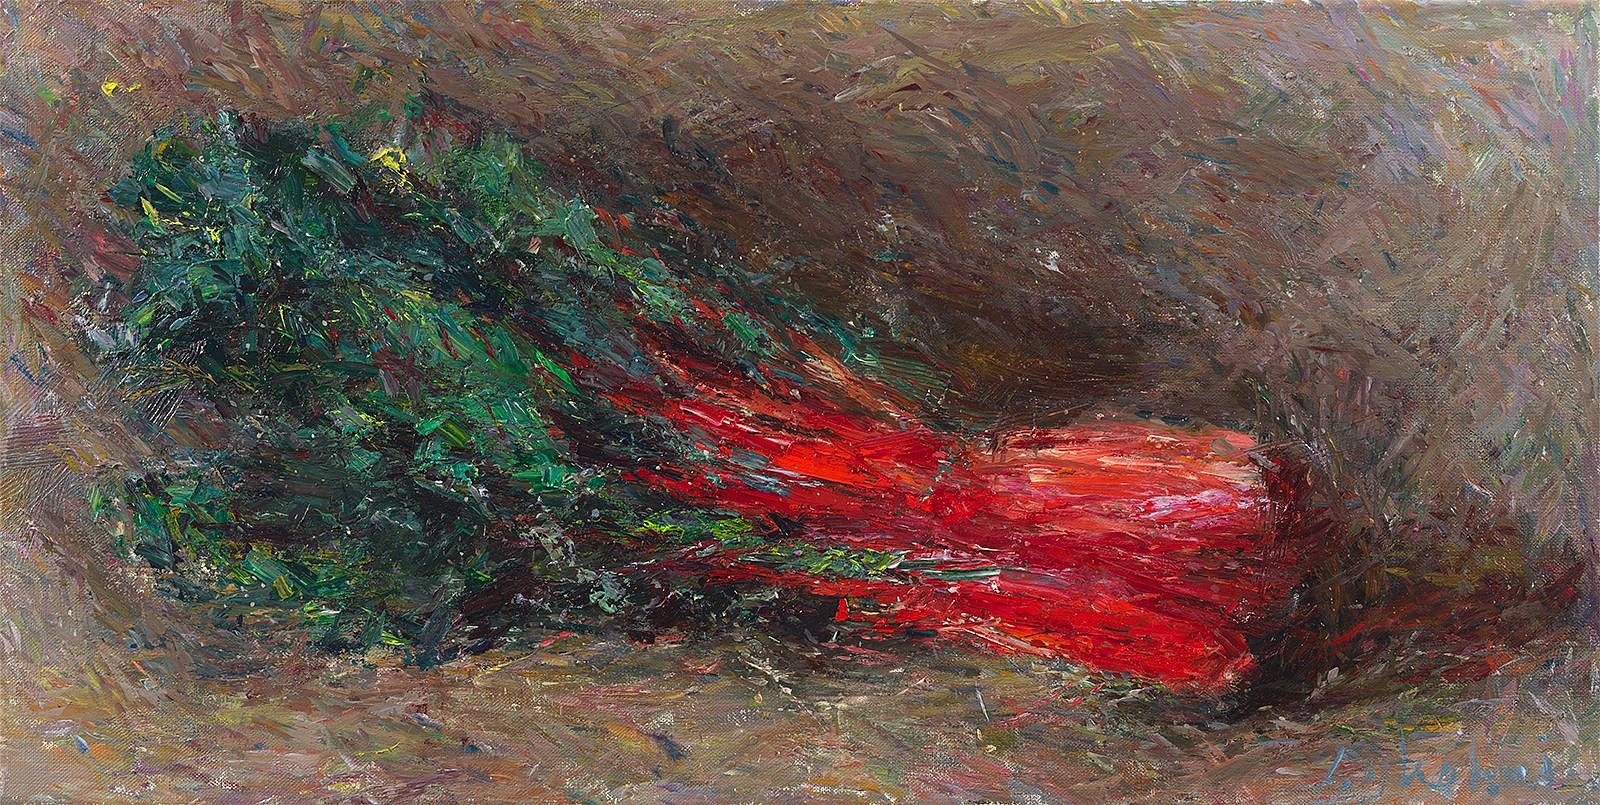 Daniel Enkaoua, Blettes rouges
2021-22, Oil on canvas